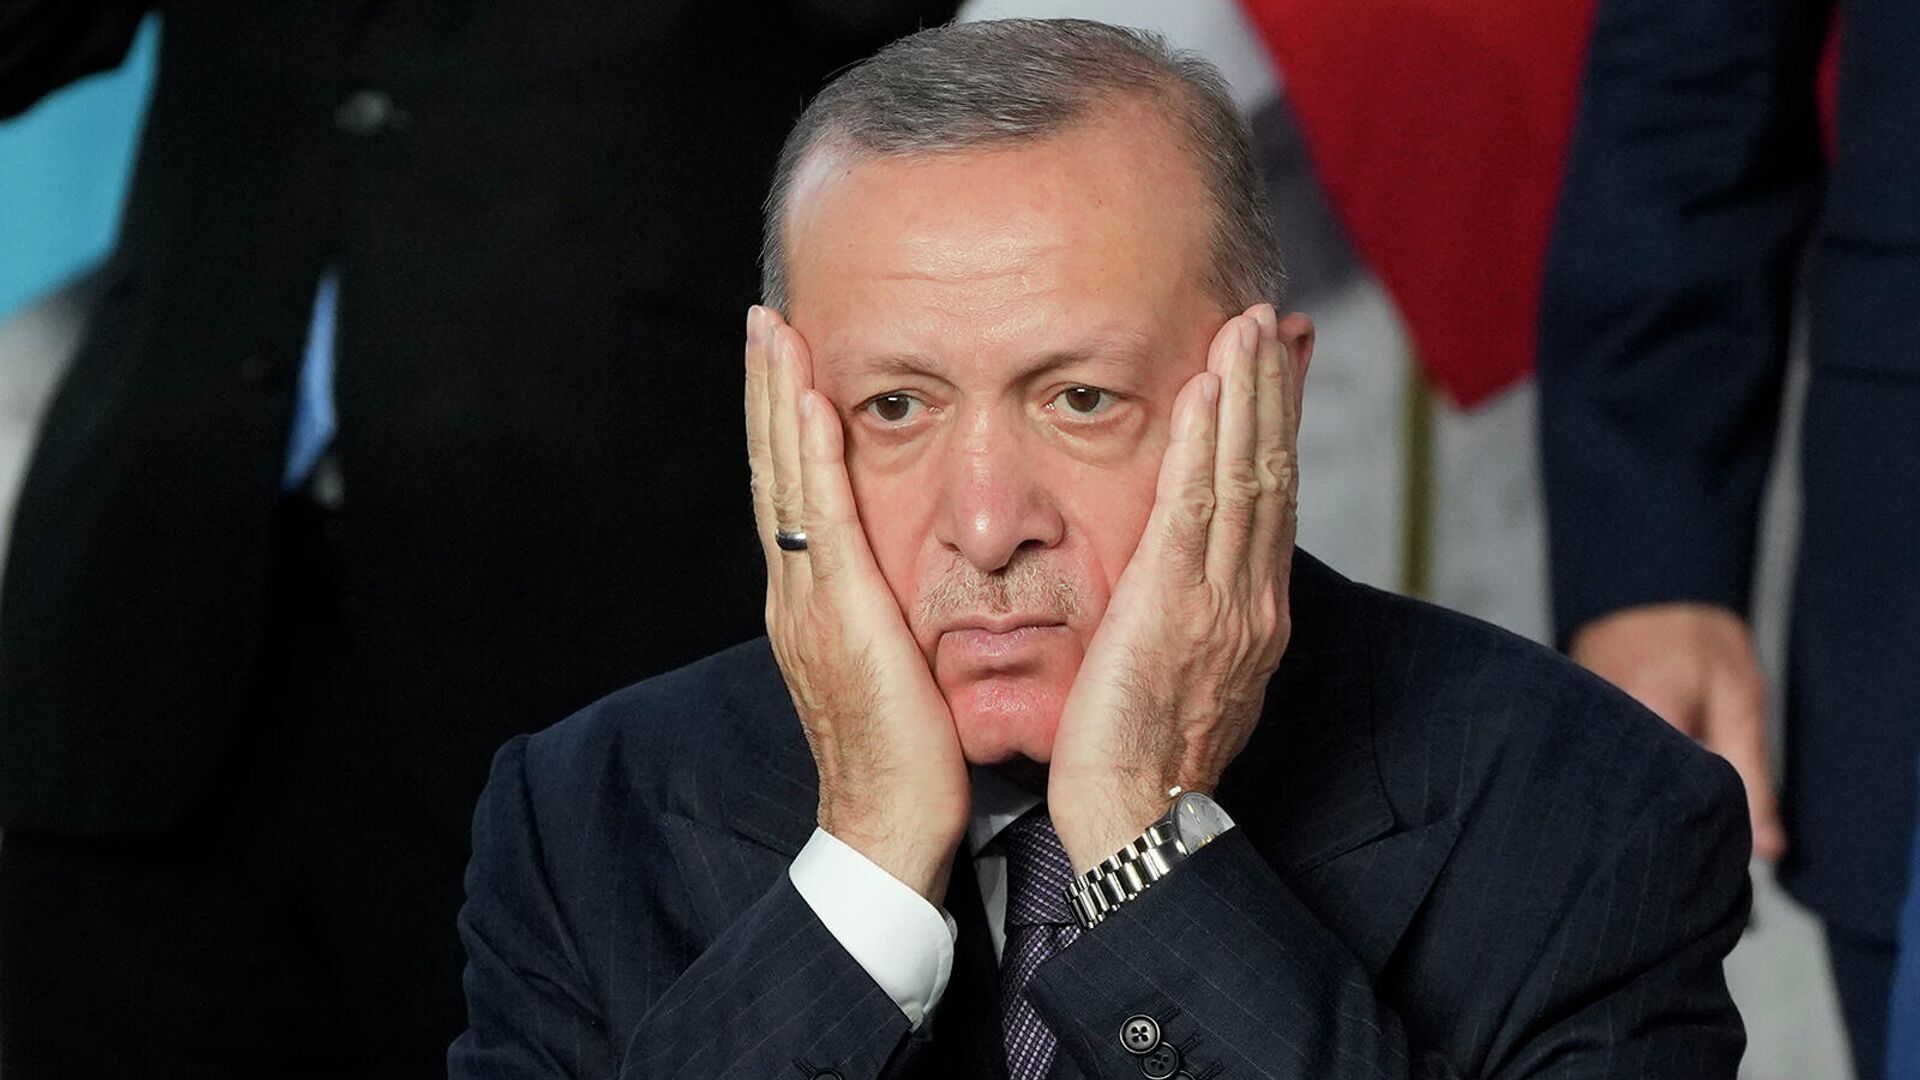 Реакция президента Турции Реджепа Тайипа Эрдогана на групповое фото мировых лидеров в конференц-центре La Nuvola для саммита G20 в Риме - Sputnik Армения, 1920, 19.02.2022